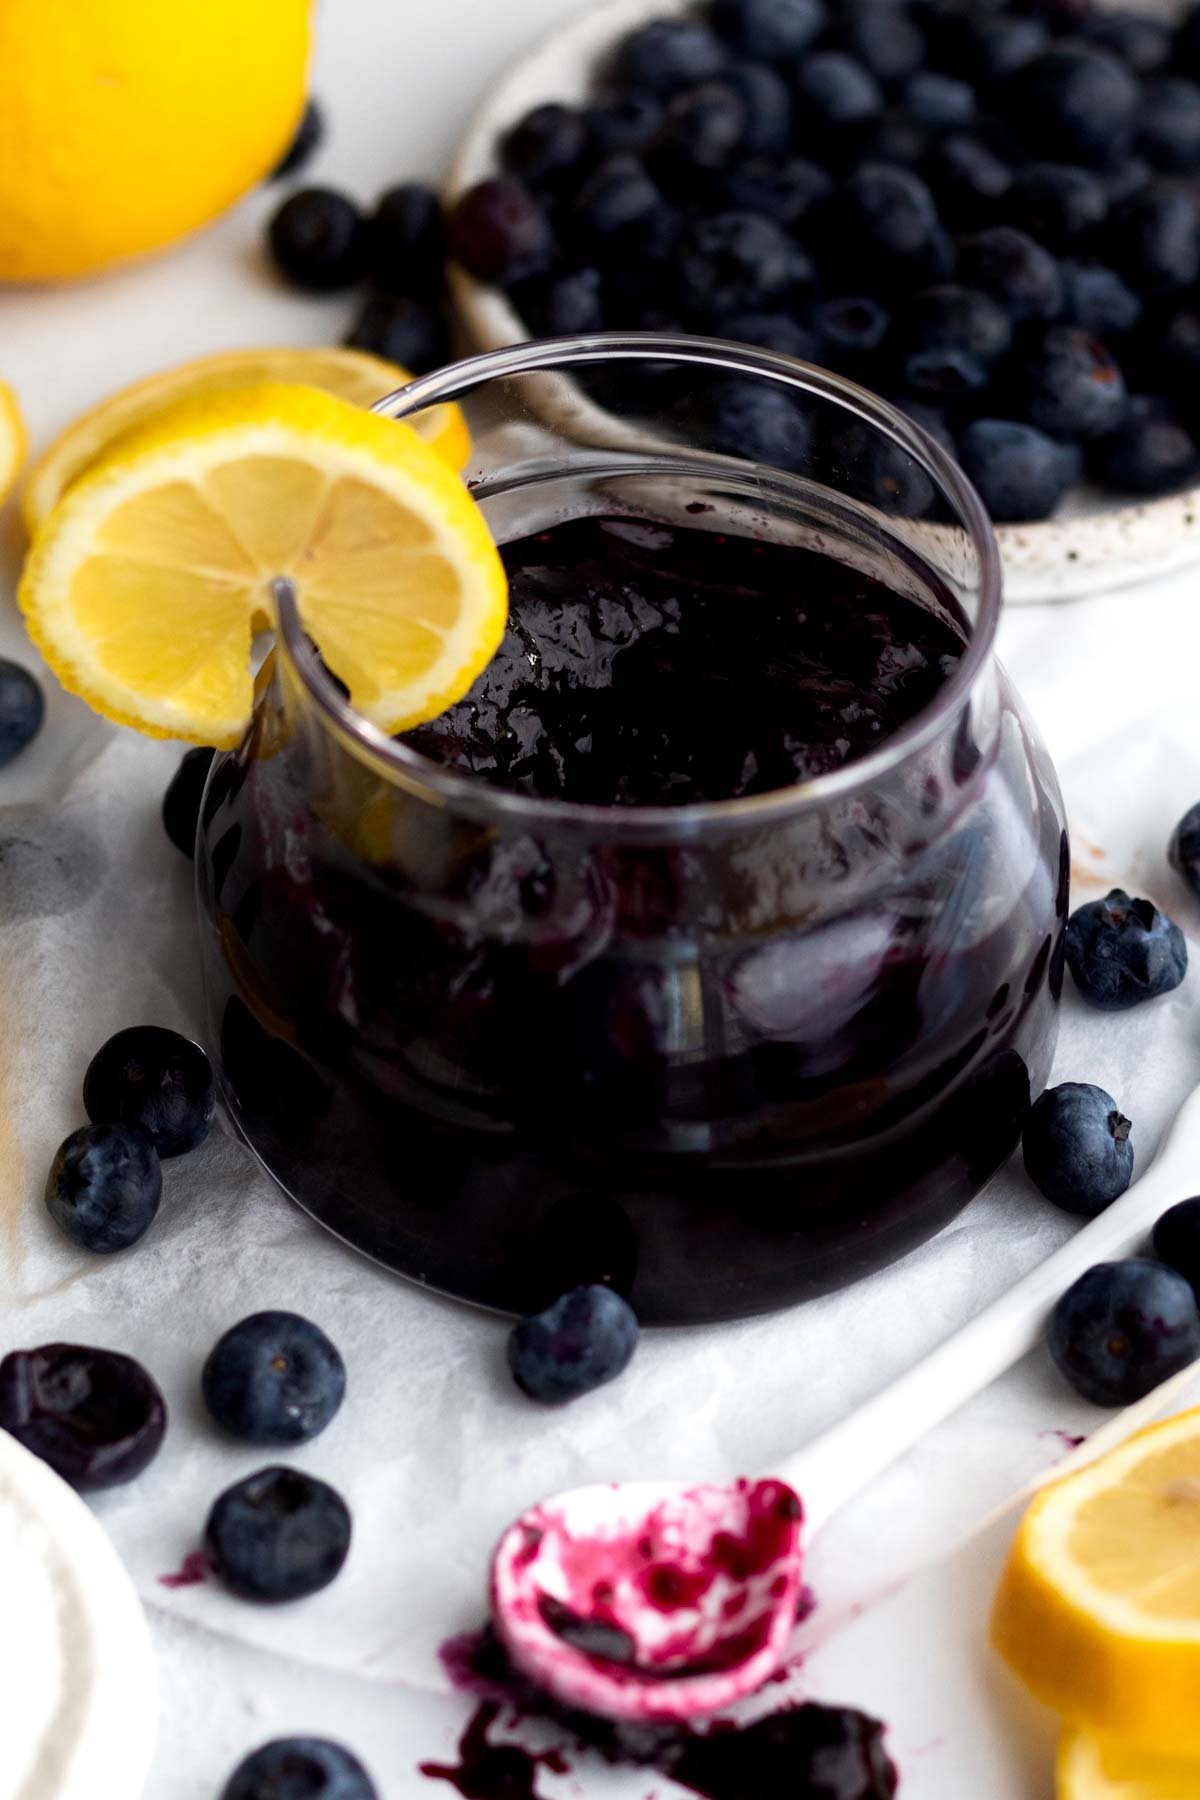 A glass ramekin with blueberry jam.